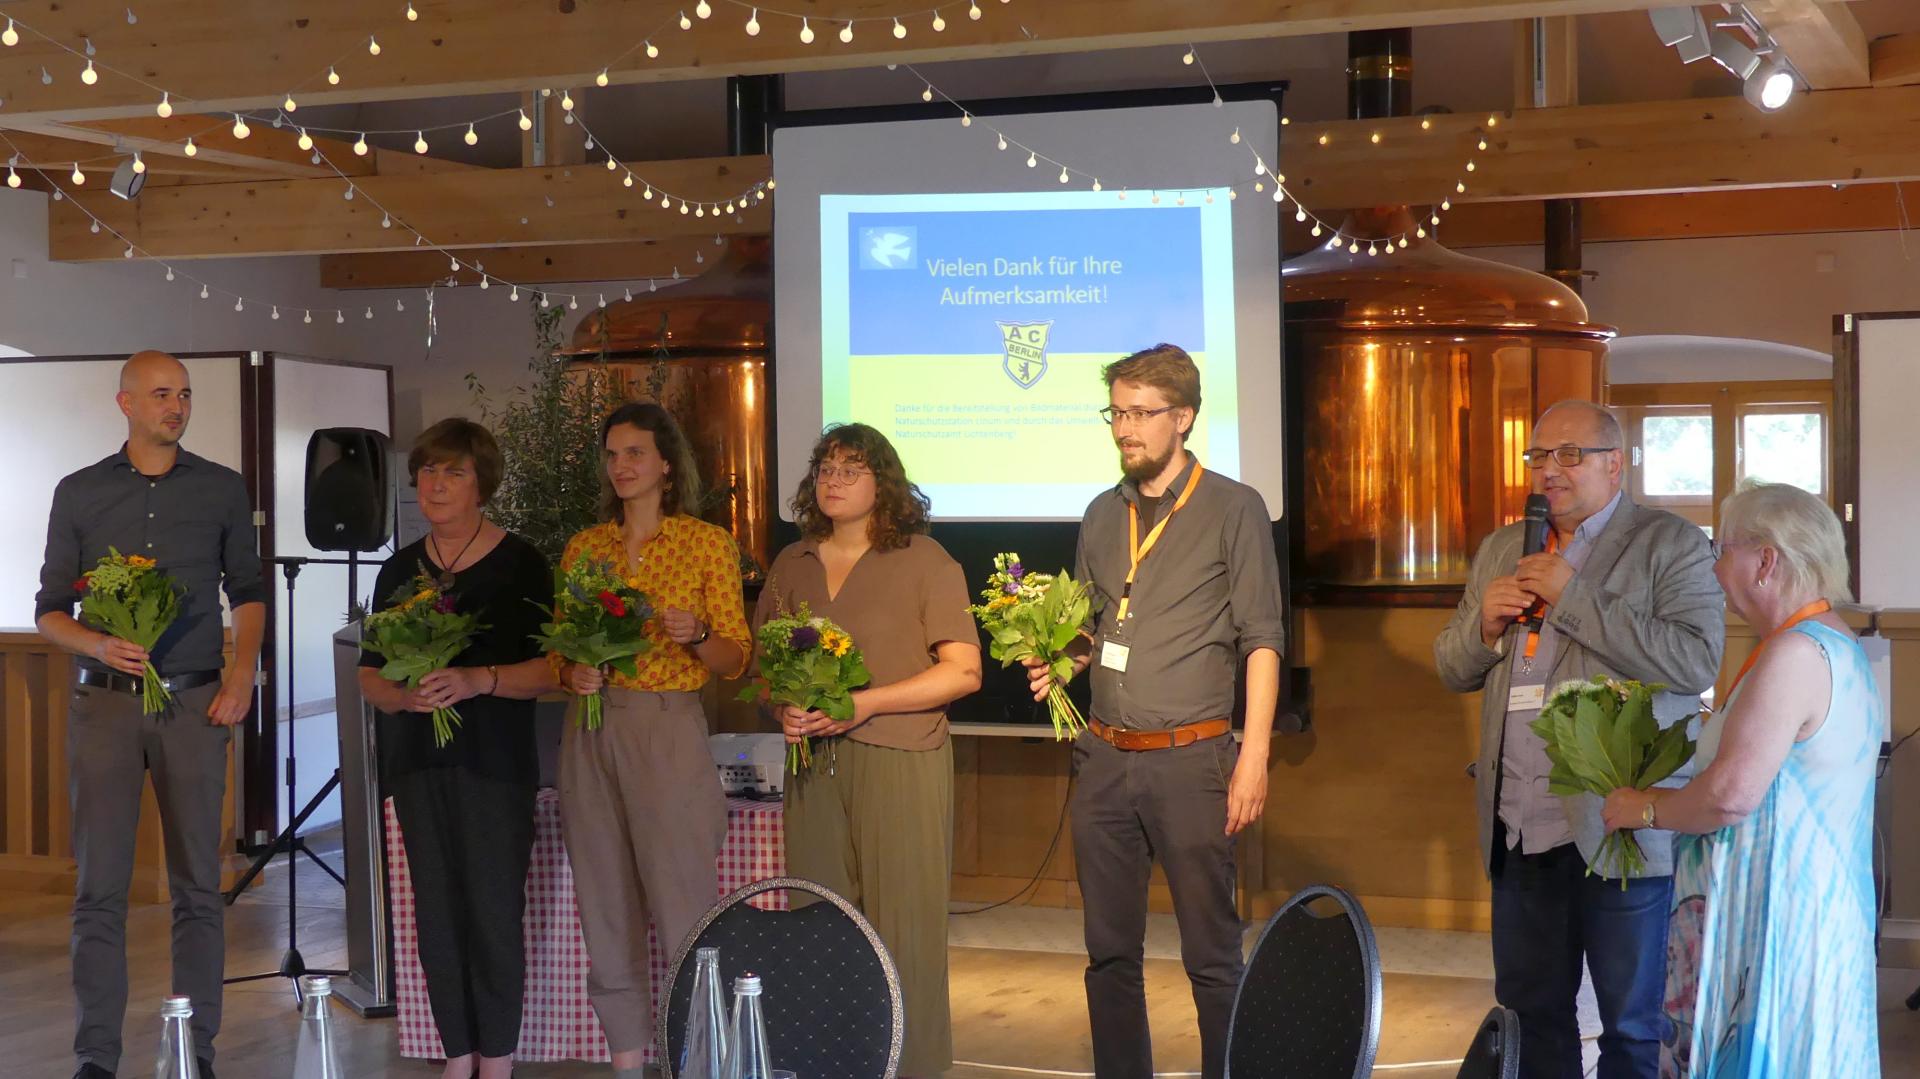 Blumengruß für Referenten und Team